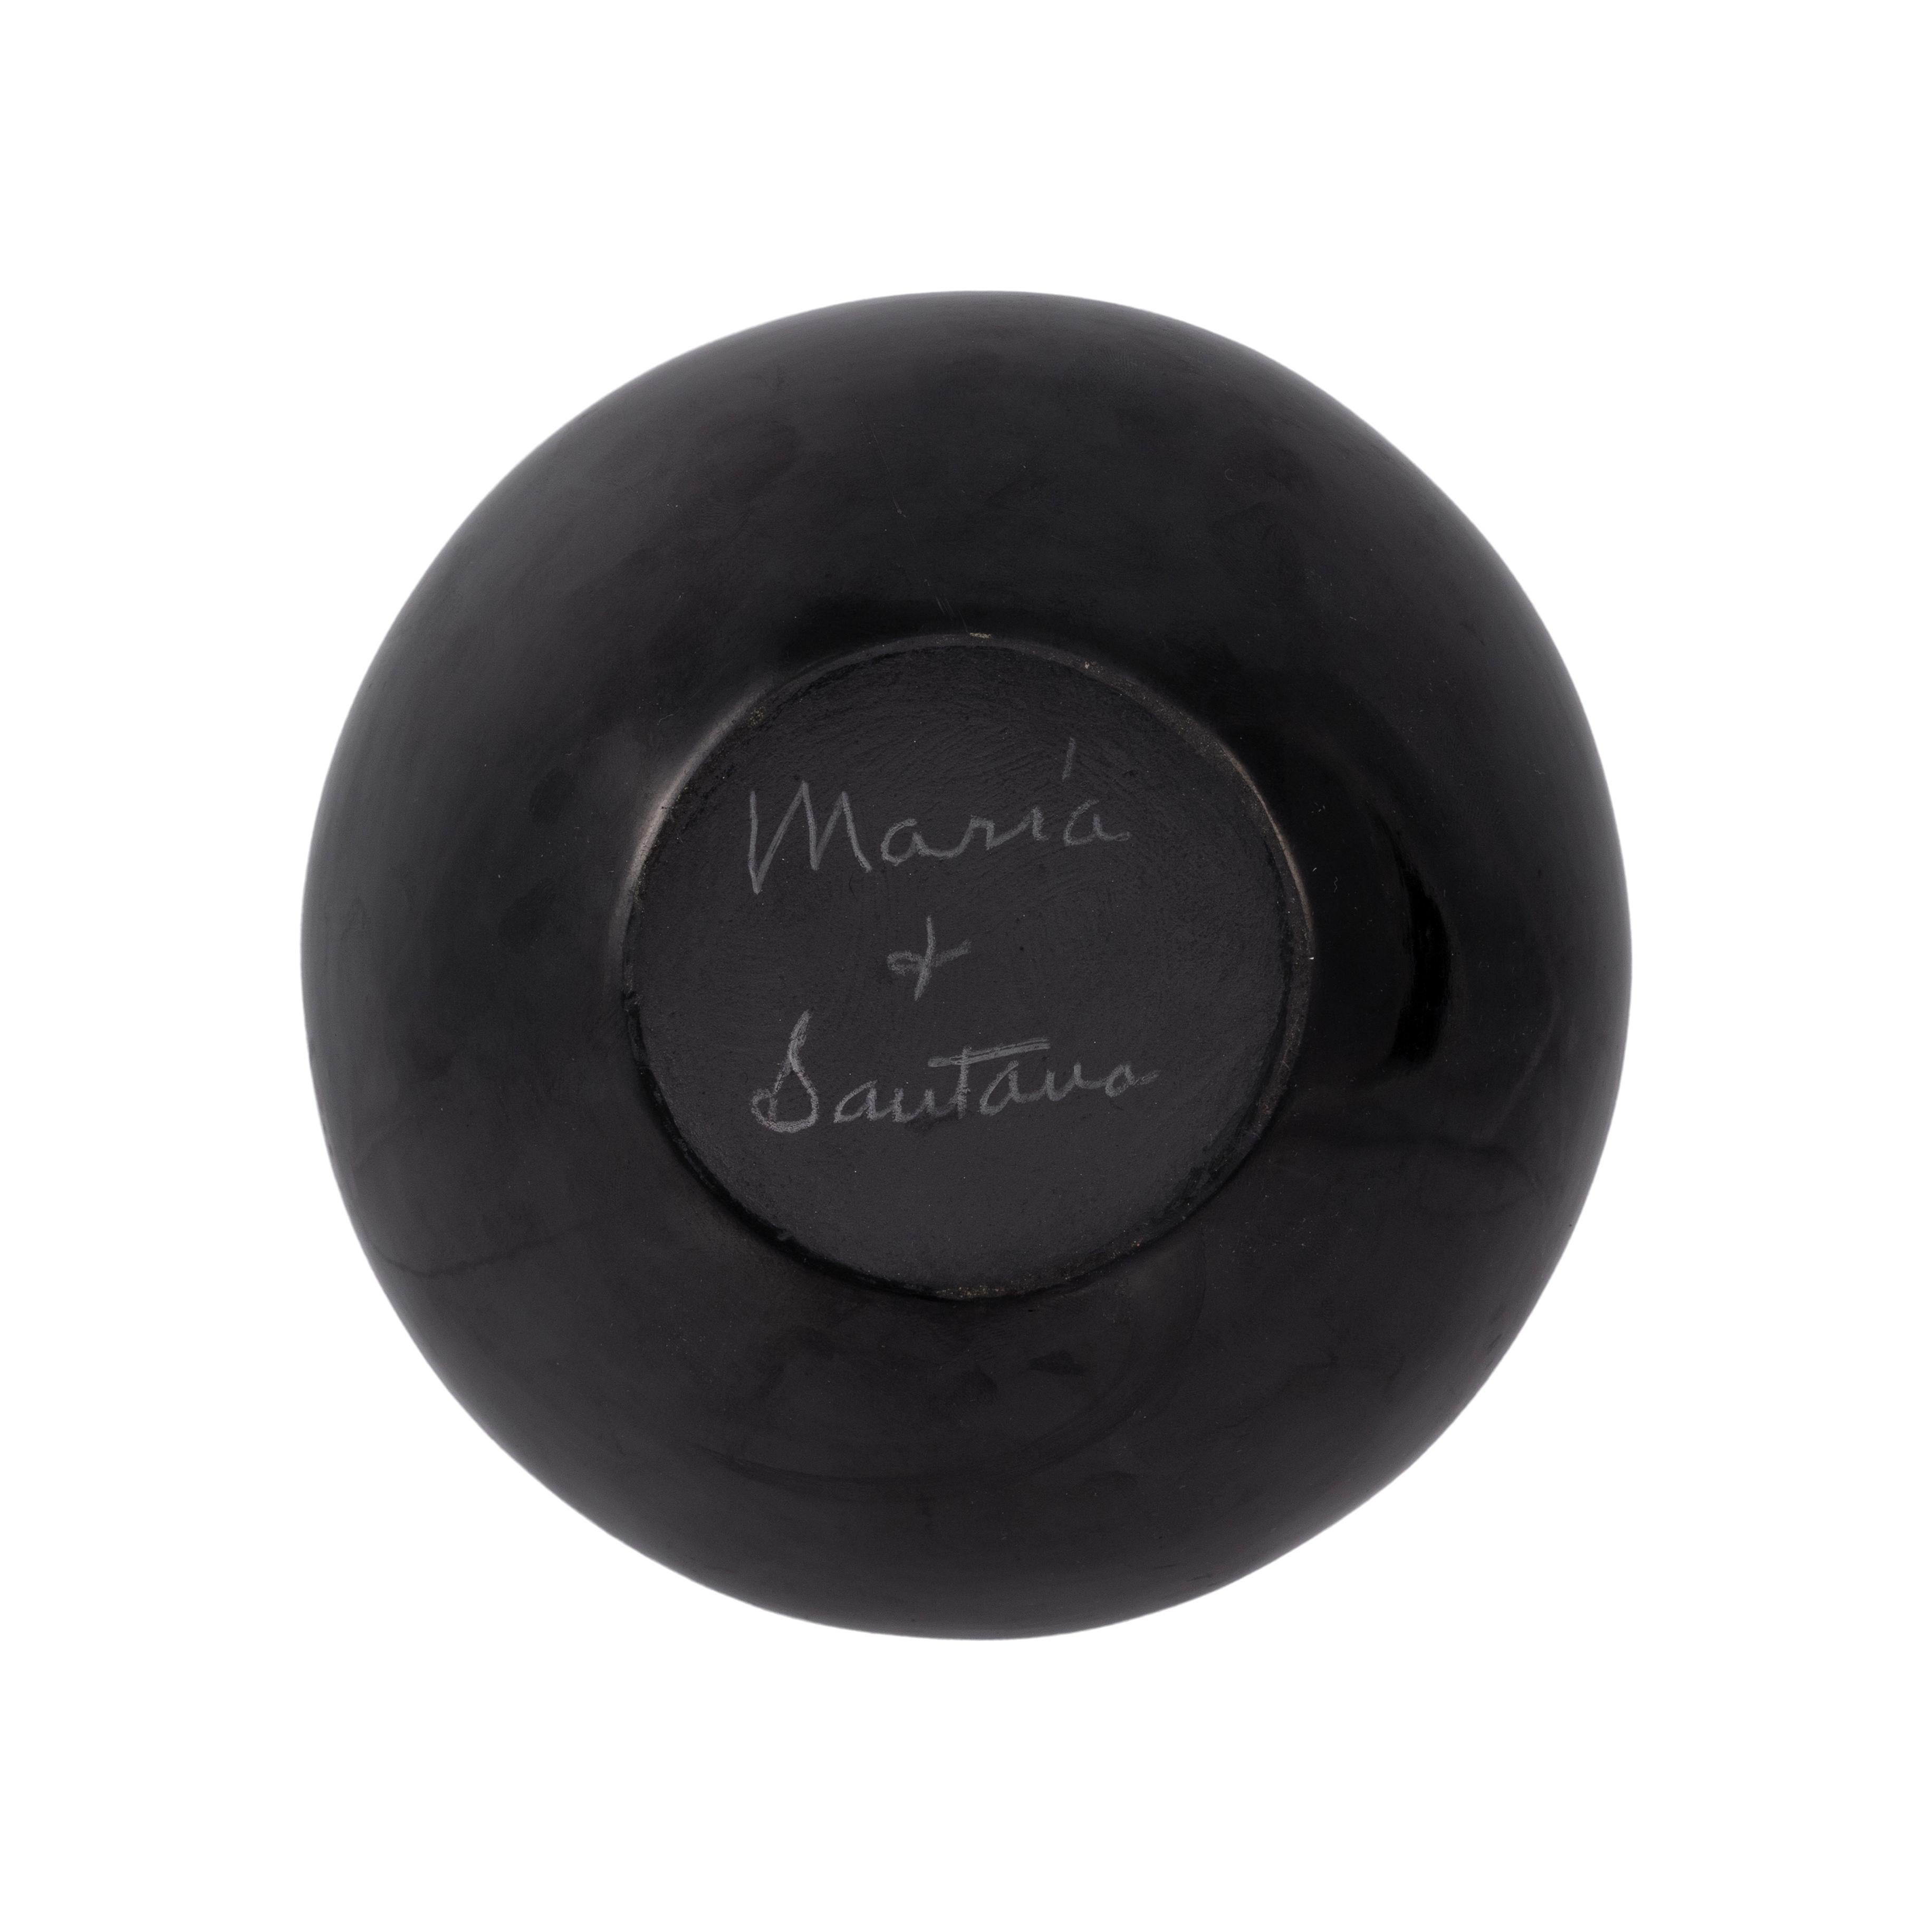 Jarre en poterie noire sur noir avec un motif de plumes très finement gravé et trois bandes concentriques, signée Marie et Santana. 1943 -1956 ; 5 3/4